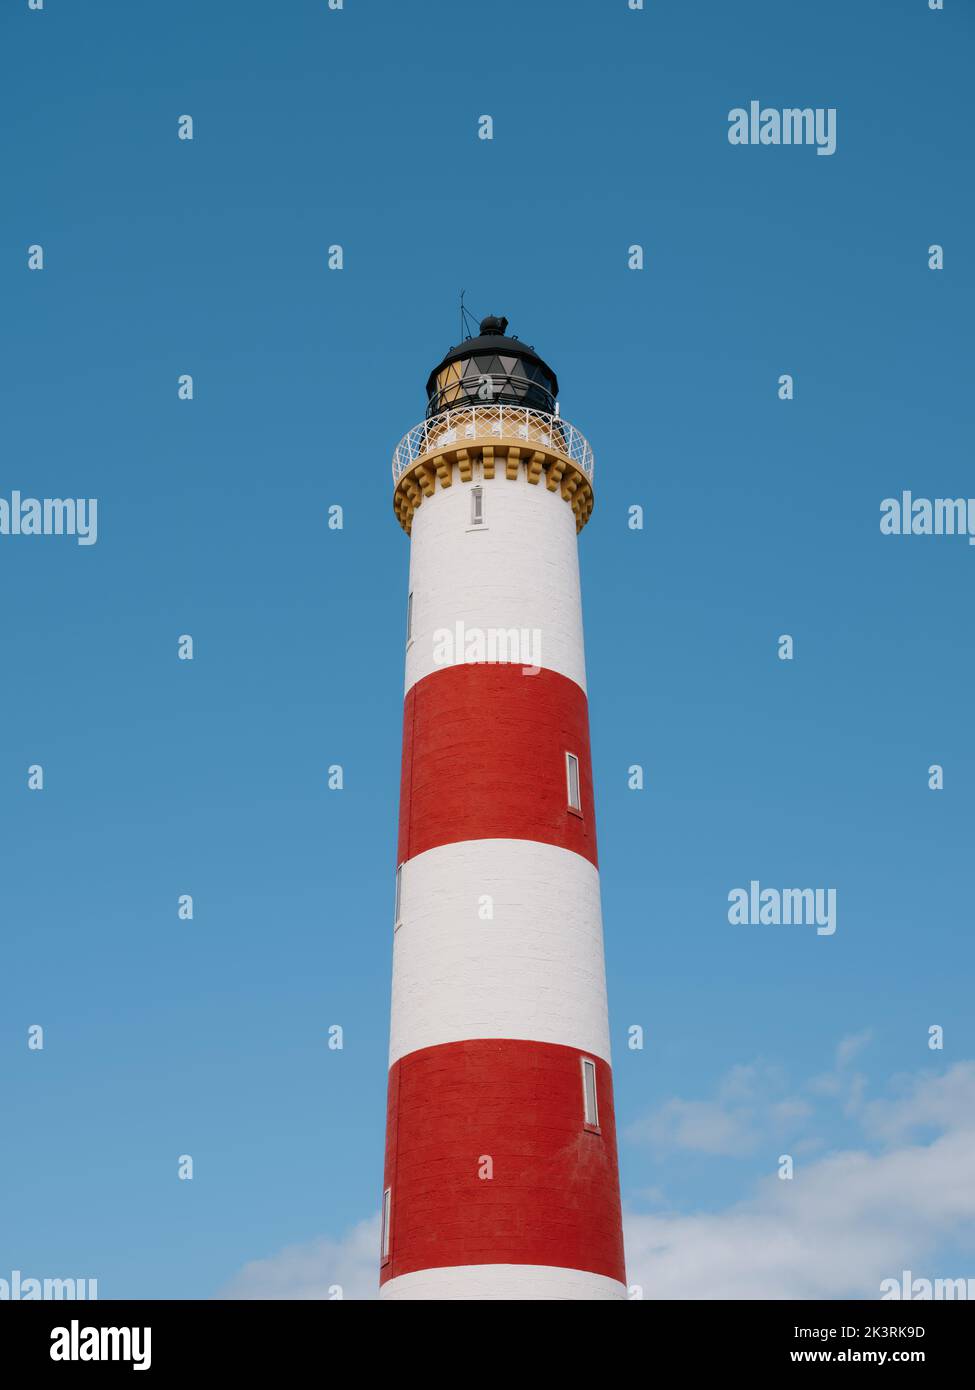 Le phare de la tour Tarbat Ness à rayures rouges et blanches, Tarbat Ness, Tain & Easter Ross, Cromartyshire, Écosse, Royaume-Uni Banque D'Images